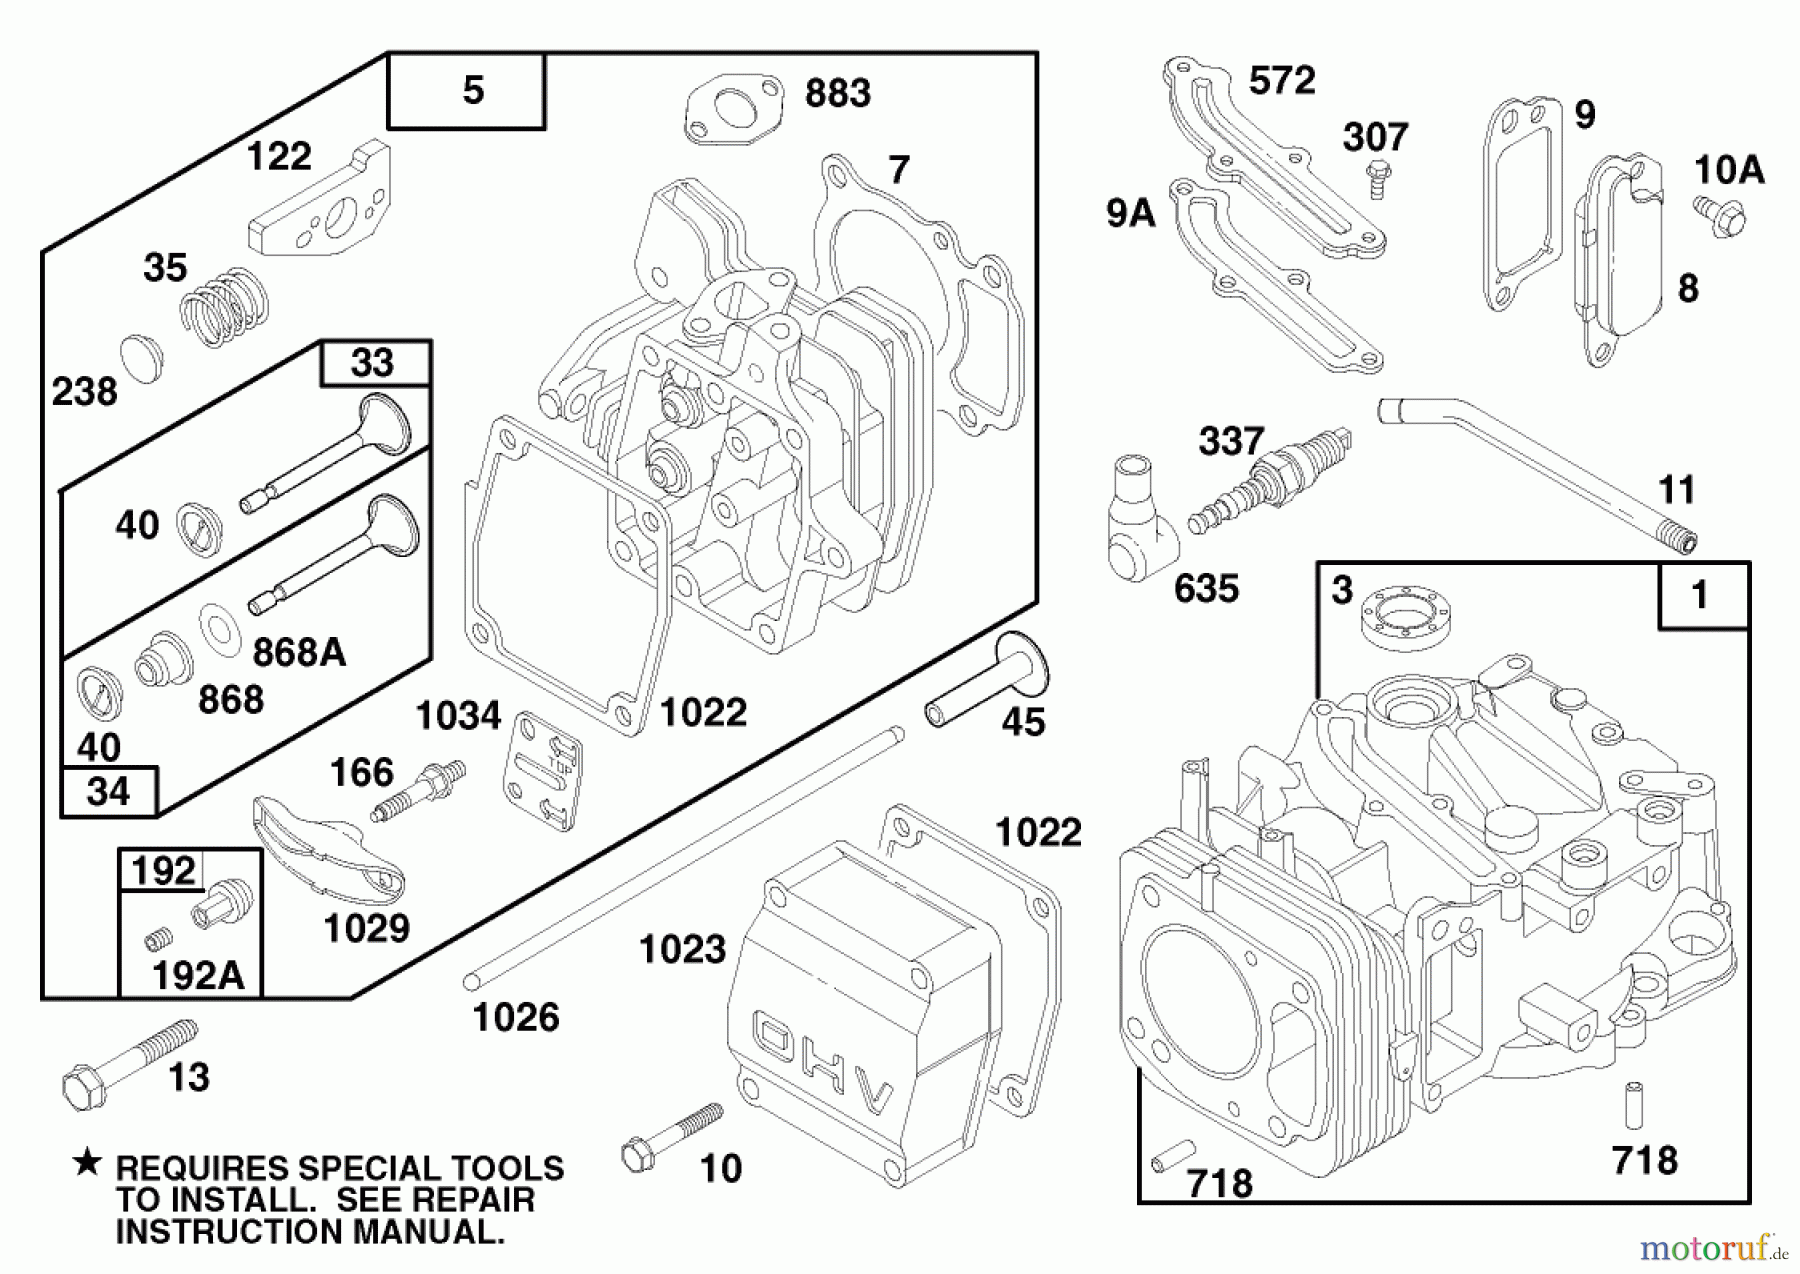  Toro Neu Mowers, Walk-Behind Seite 1 20465 - Toro Lawnmower, 1996 (6900001-6999999) ENGINE GTS 150 (MODEL NO. 20465 ONLY) #1